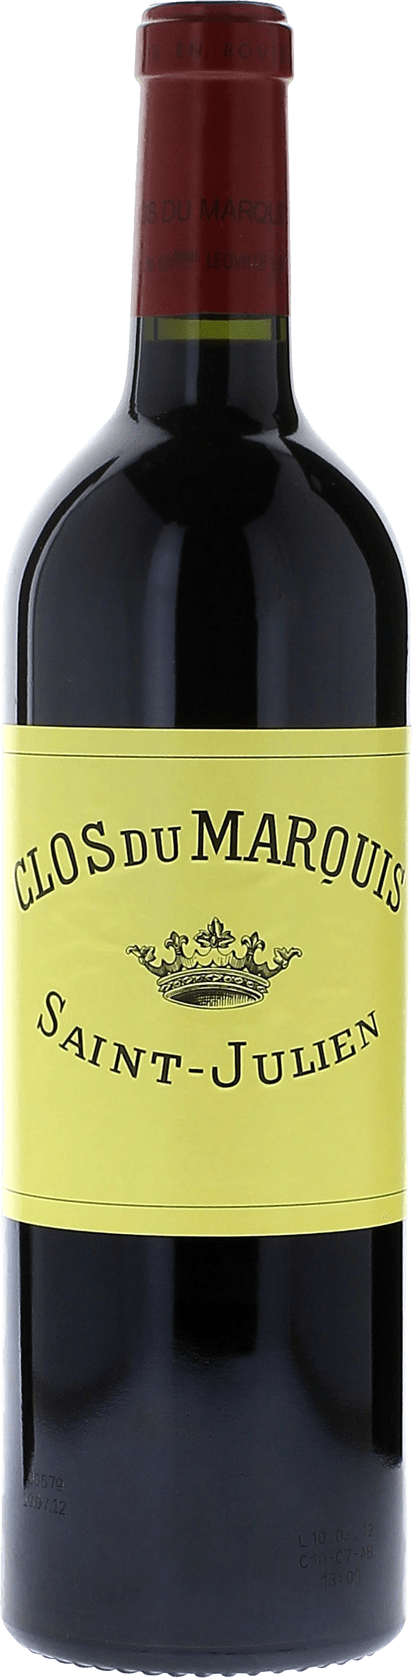 Clos du marquis 1988 2me vin de LEOVILLE LAS CASES Saint-Julien, Bordeaux rouge